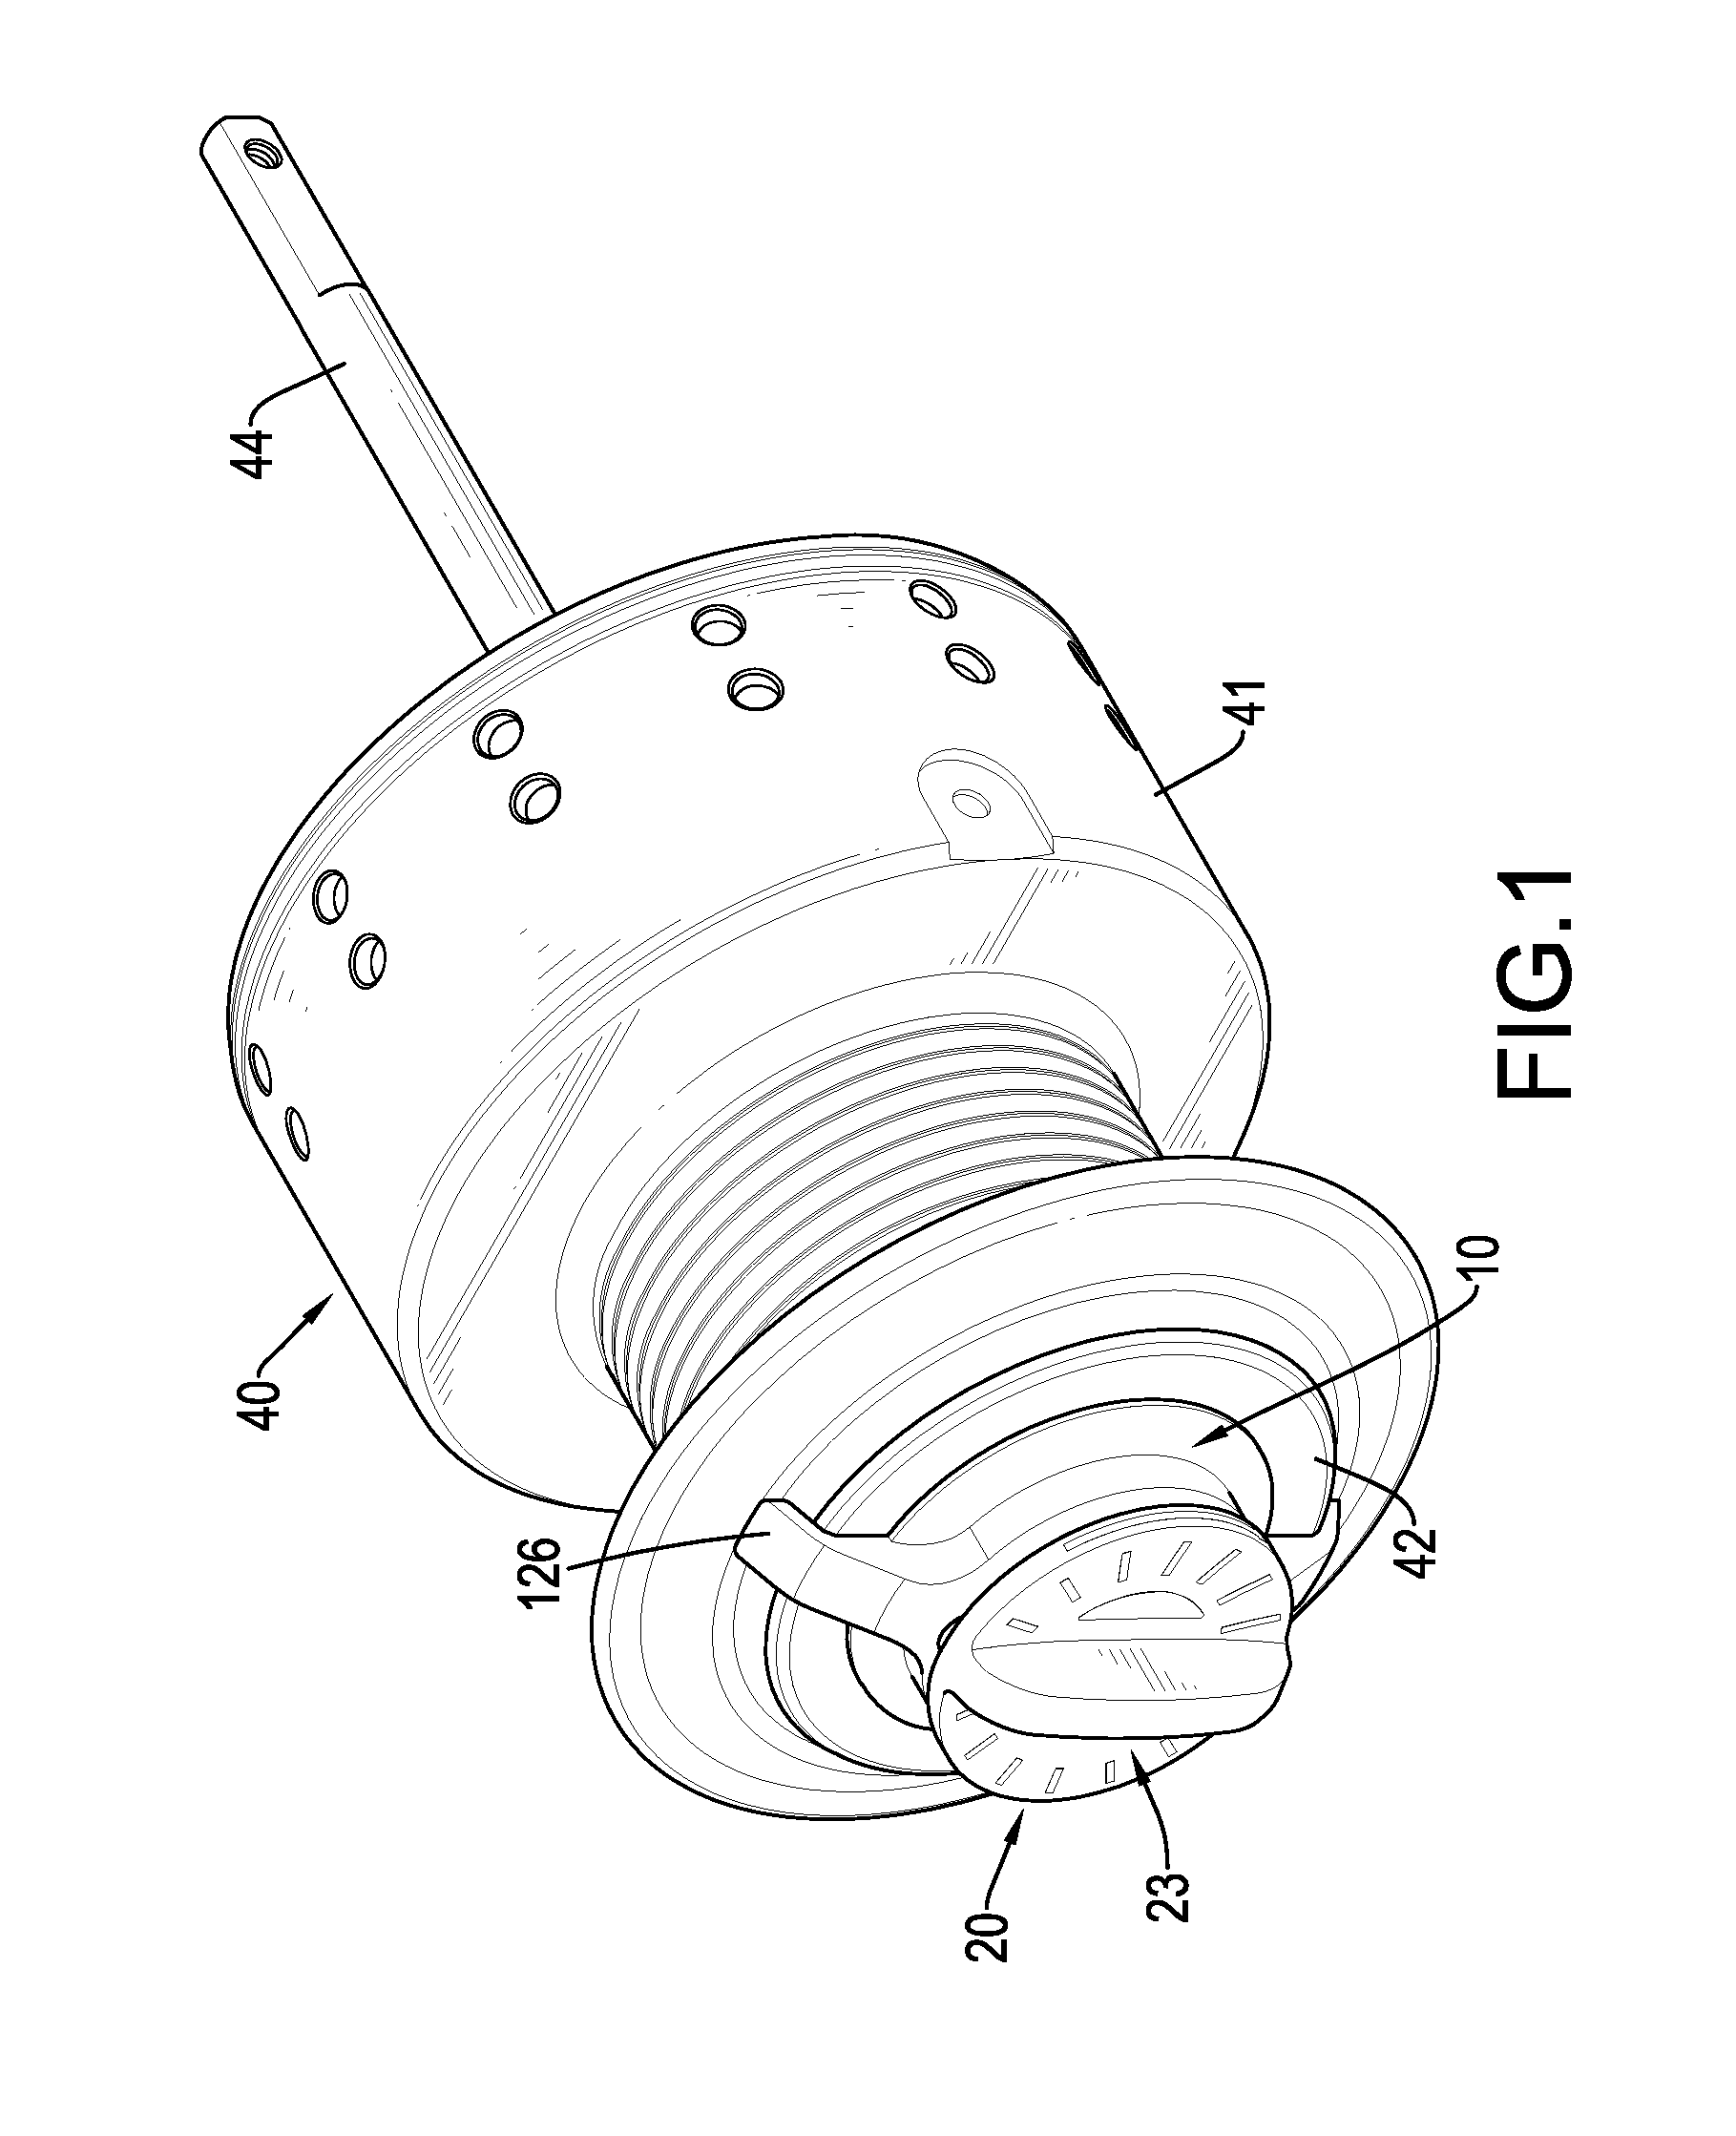 Brake-adjusting assembly for a fishing reel